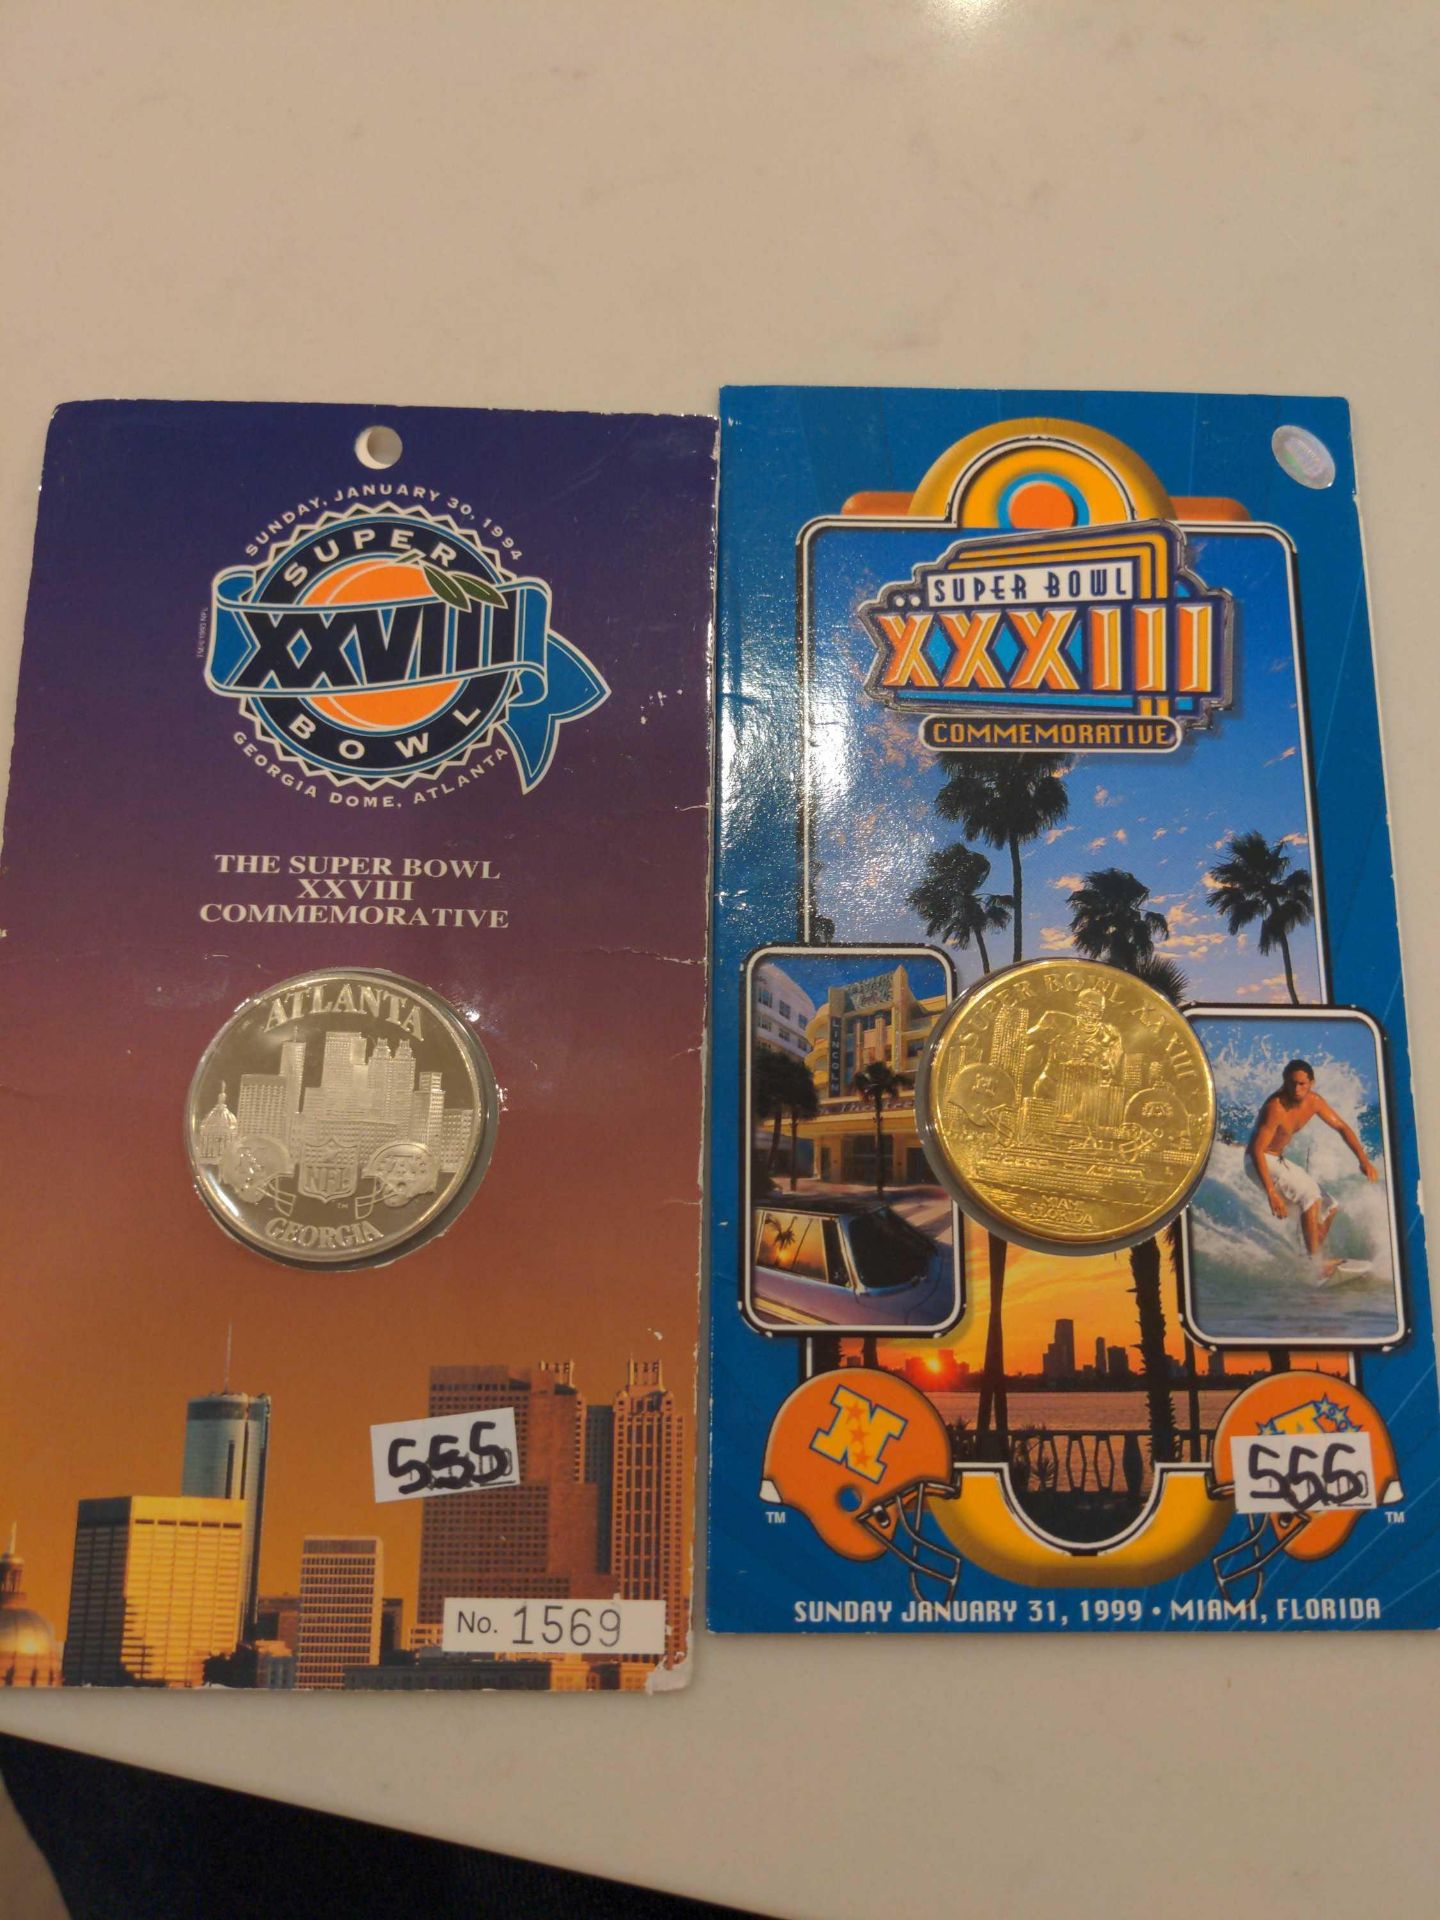 2 Commemorative Super Bowl Coins, Atlanta 1994 and Miami 1999